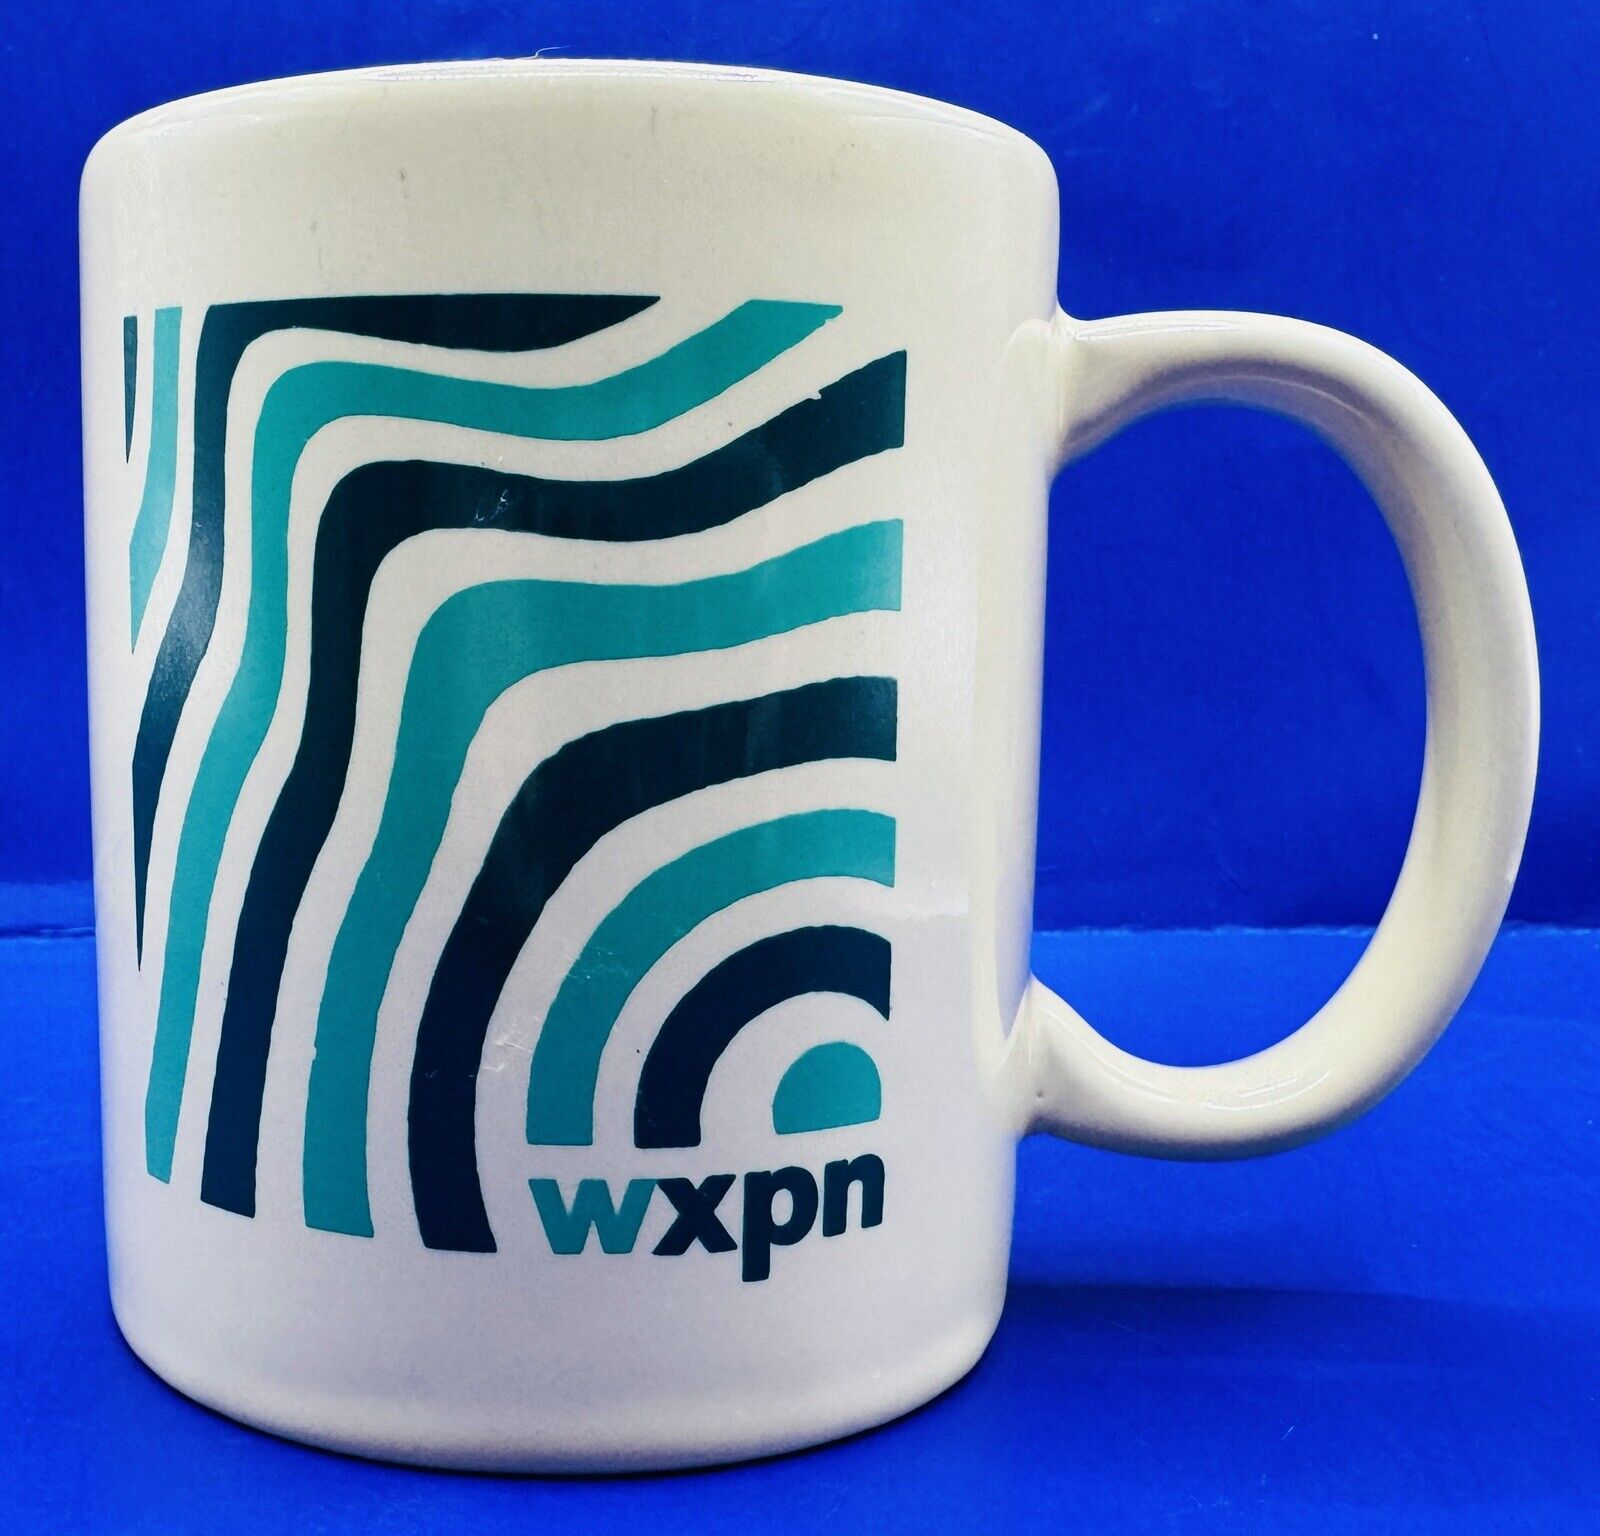 Vintage 88.5 WXPN Radio Station University Of Pennsylvania Promotional Mug